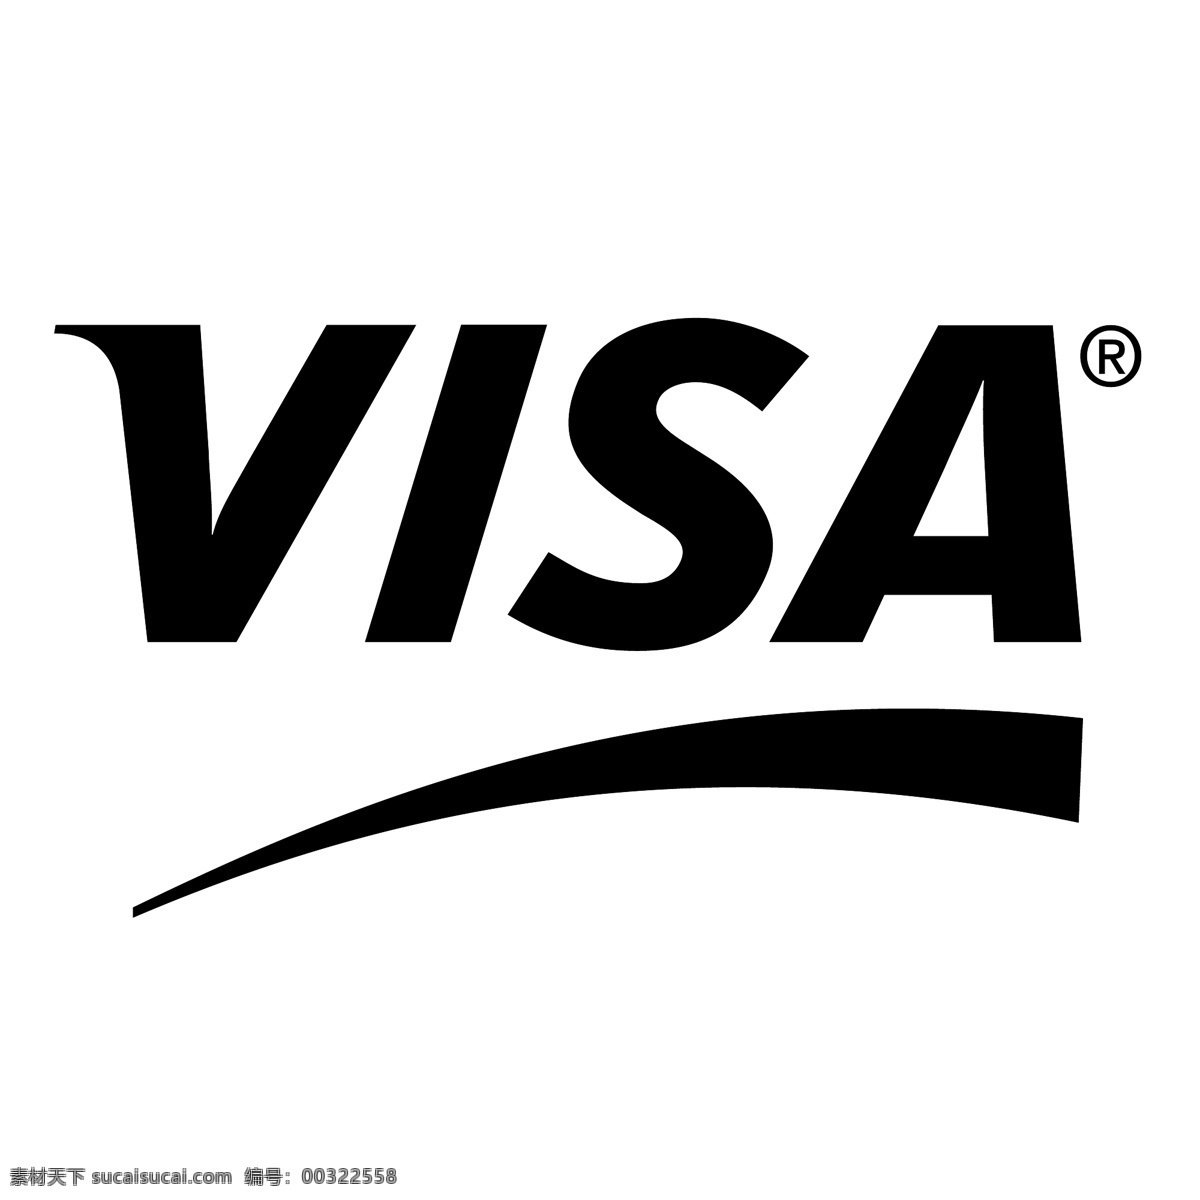 2签证 签证 万事达卡 发现 logo 矢量 艺术 visa 卡 标志 万事达 插画 签证签证 信用卡 向量 标识 矢量图 建筑家居